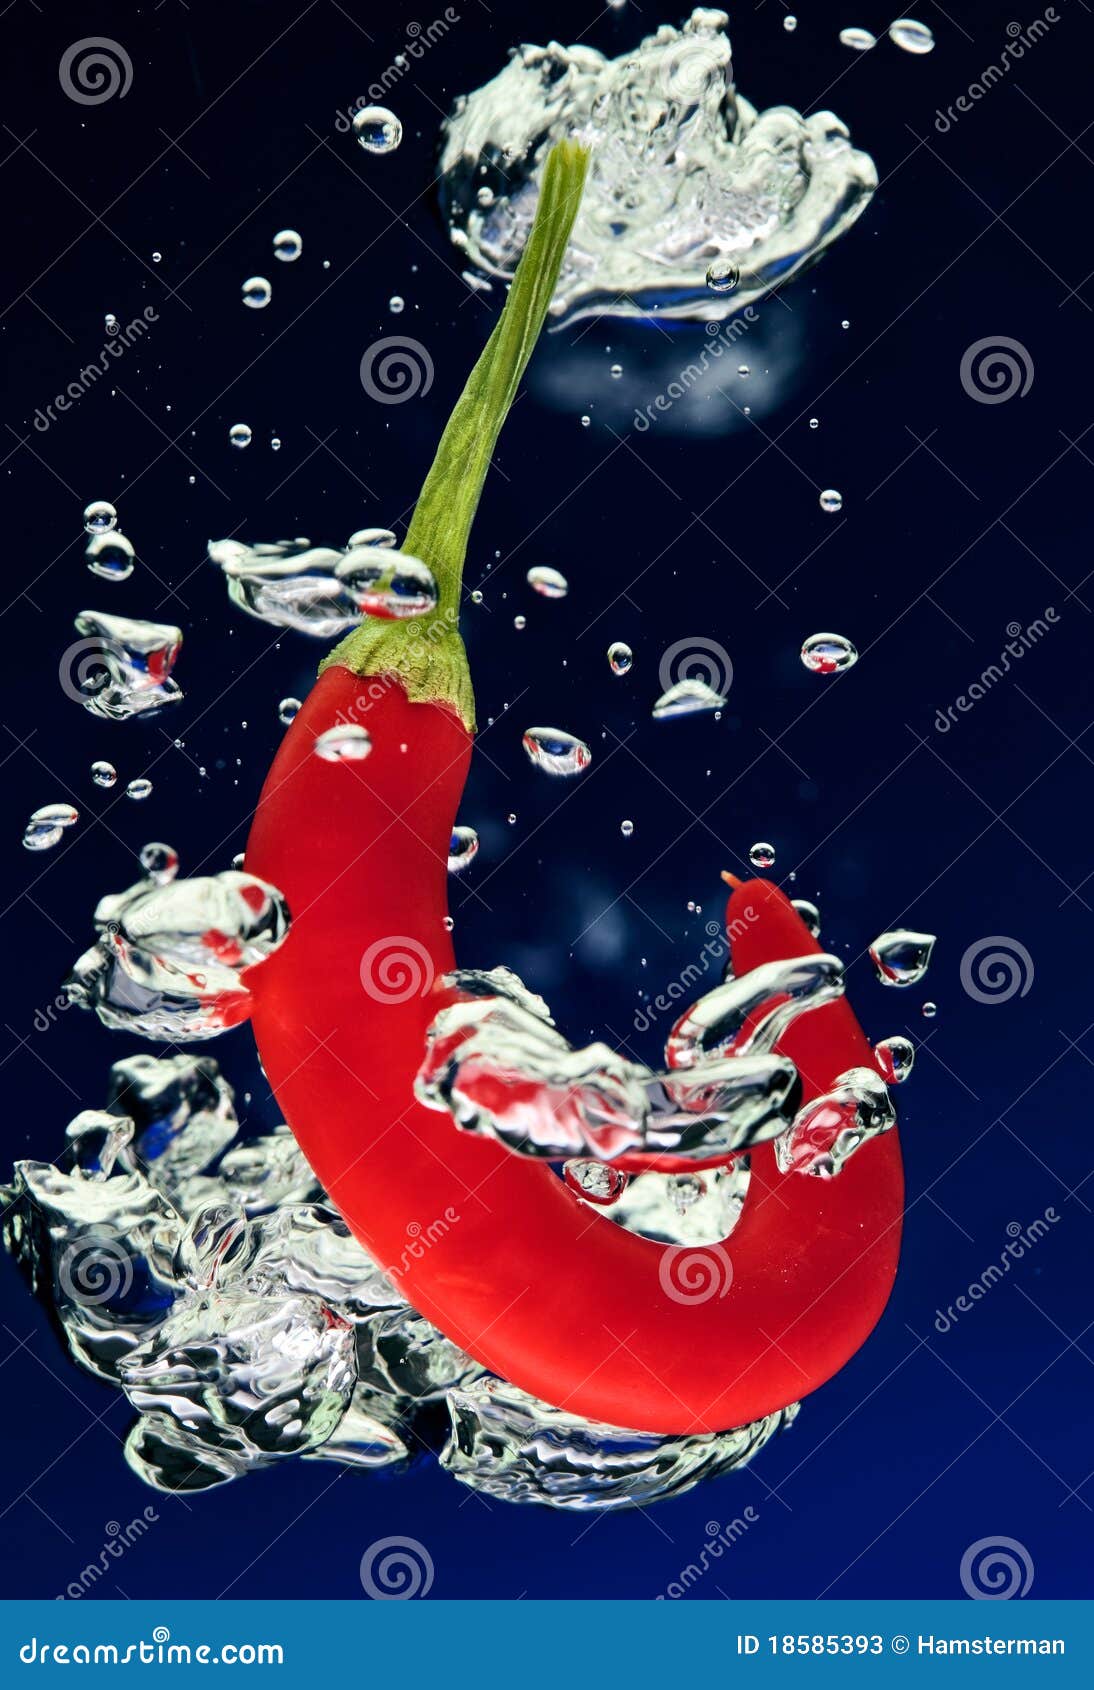 Water pepper. Перец Чили в воде. Красивые картинки перцы в воде. Вода перец. Перец в воде плавает..